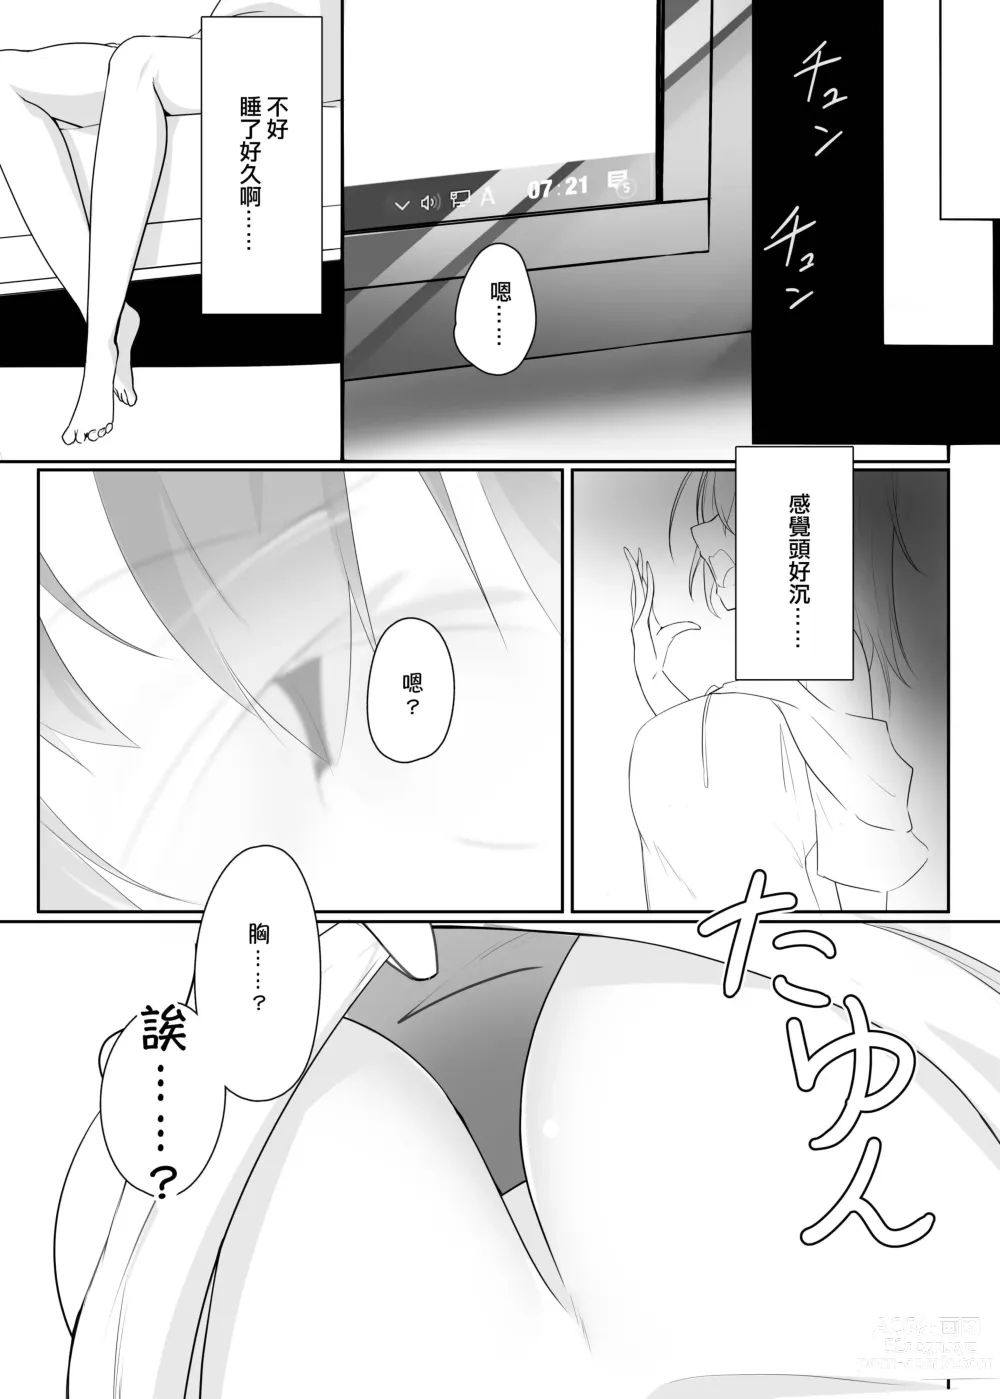 Page 3 of doujinshi Ribiniku Shita Vtuber ga Mesu ni Ochiru made